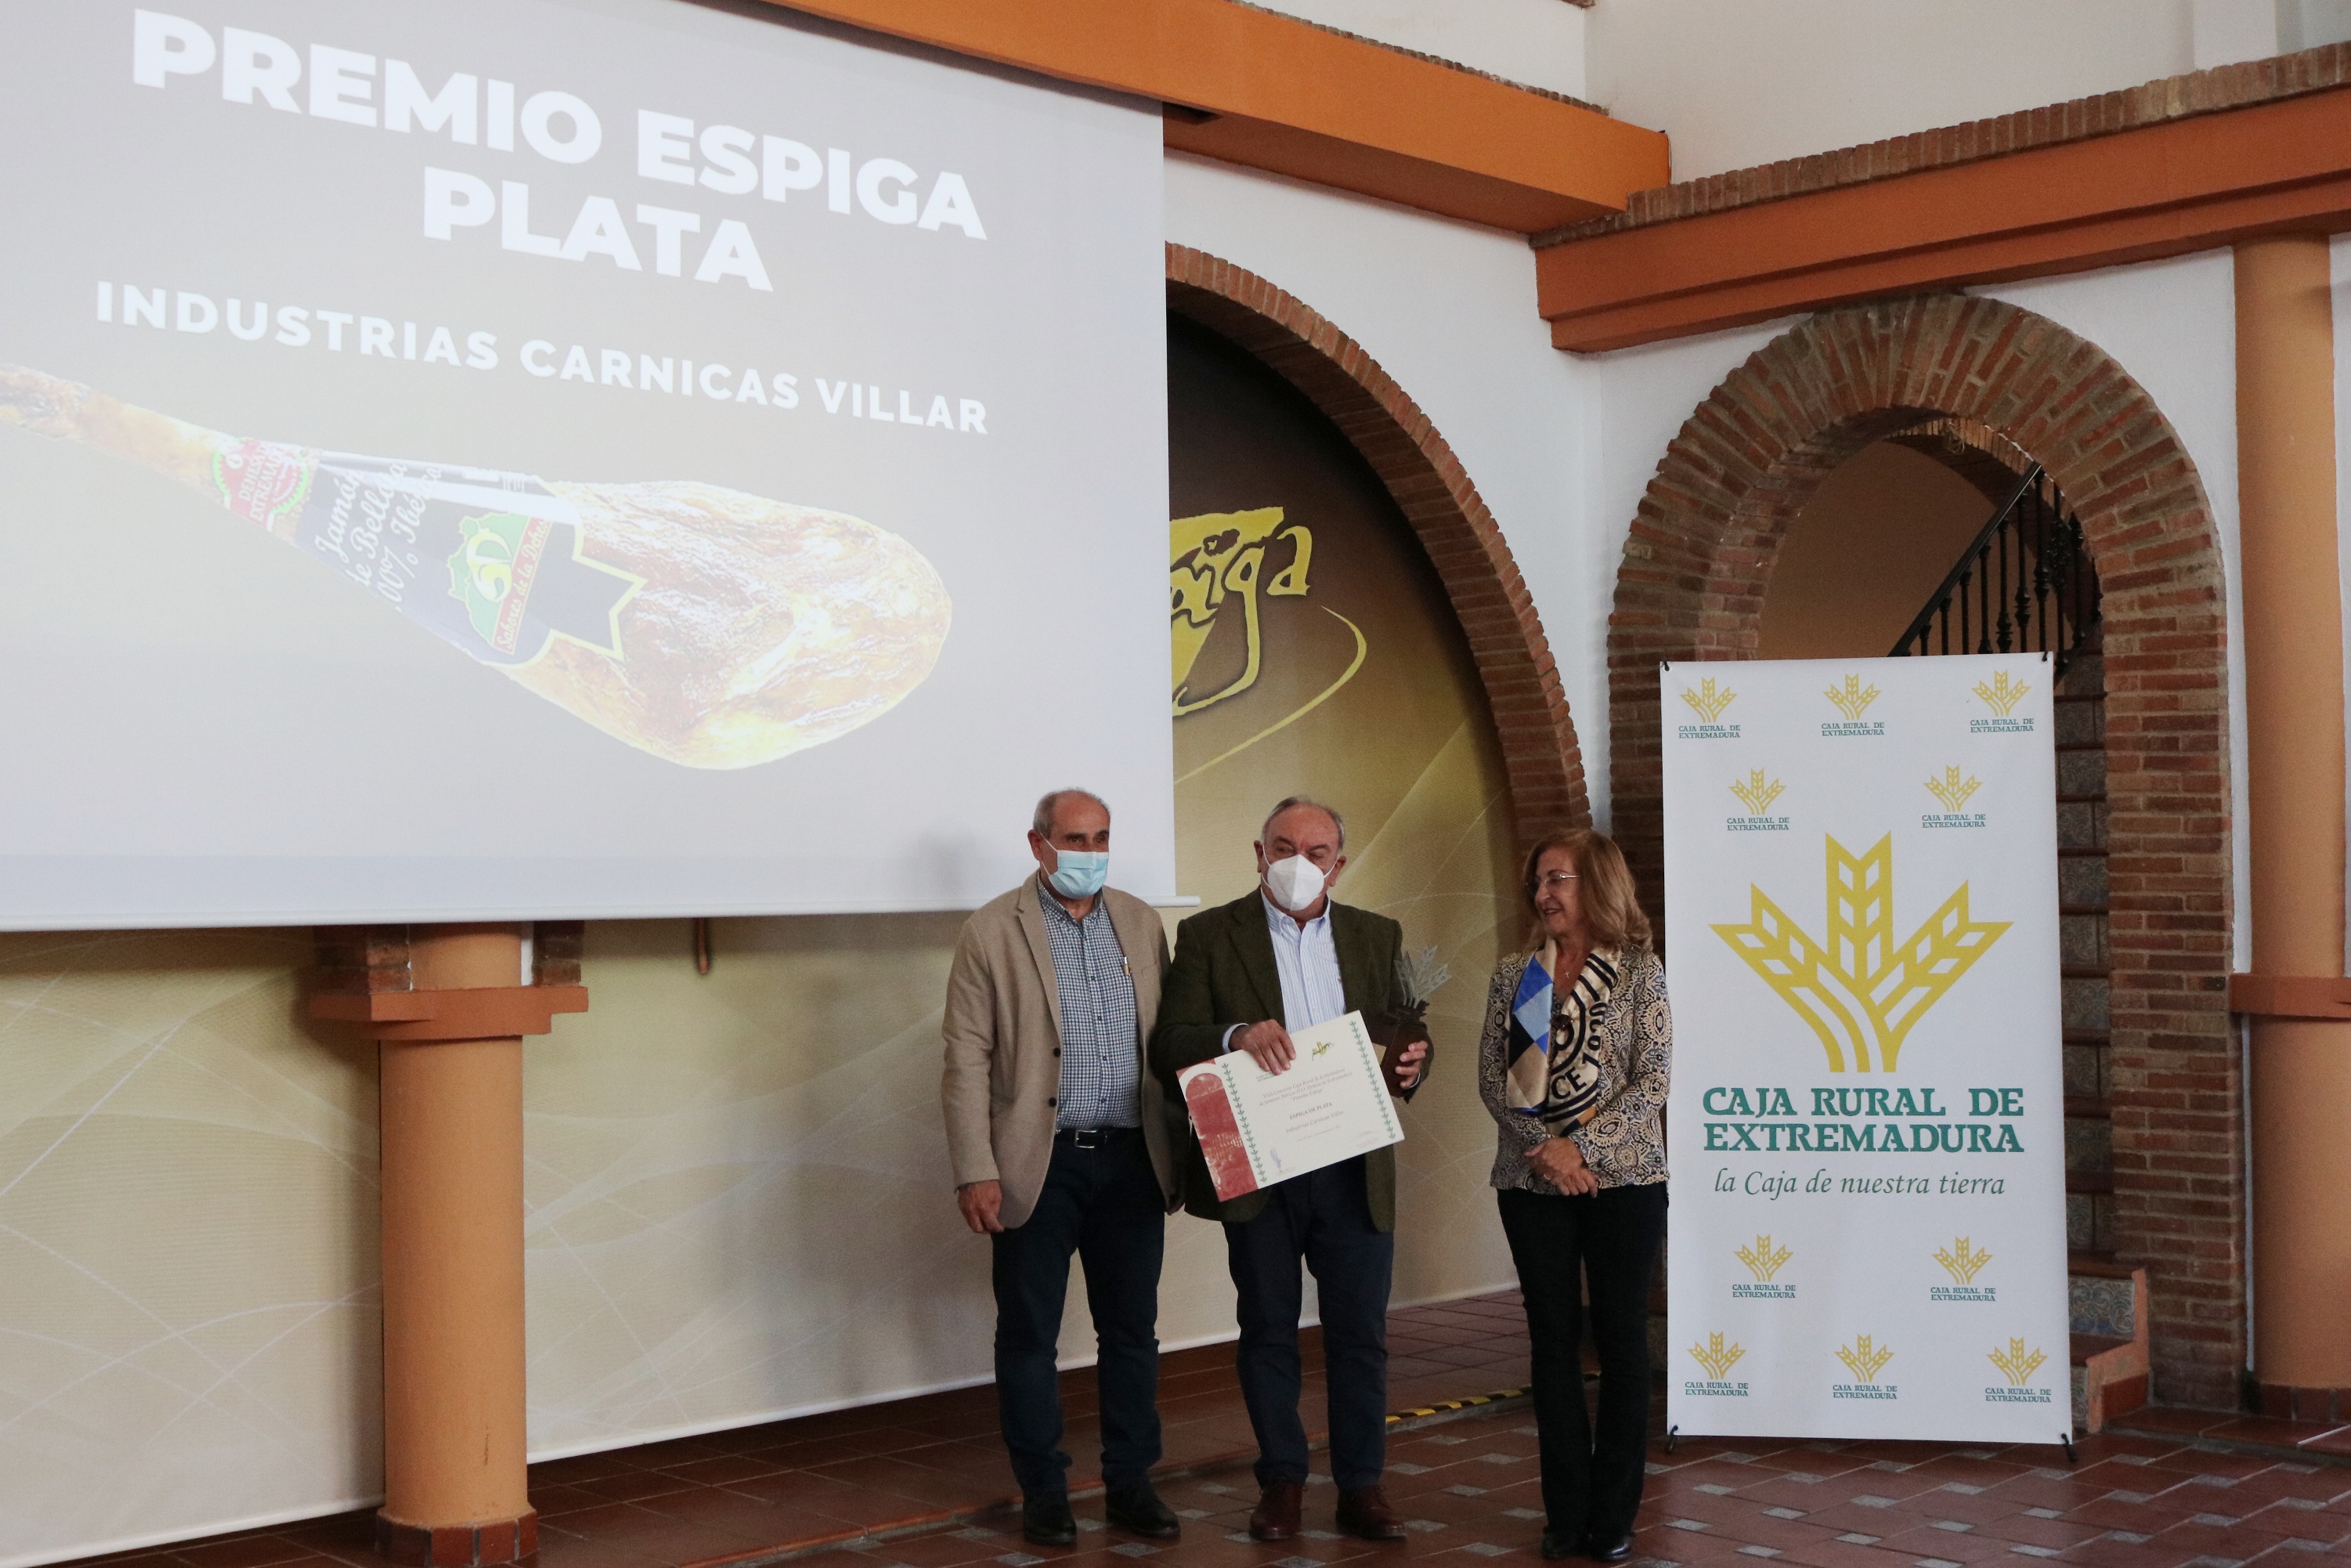 Premio Espiga Plata Jamón a Industrias Cárnicas Villar